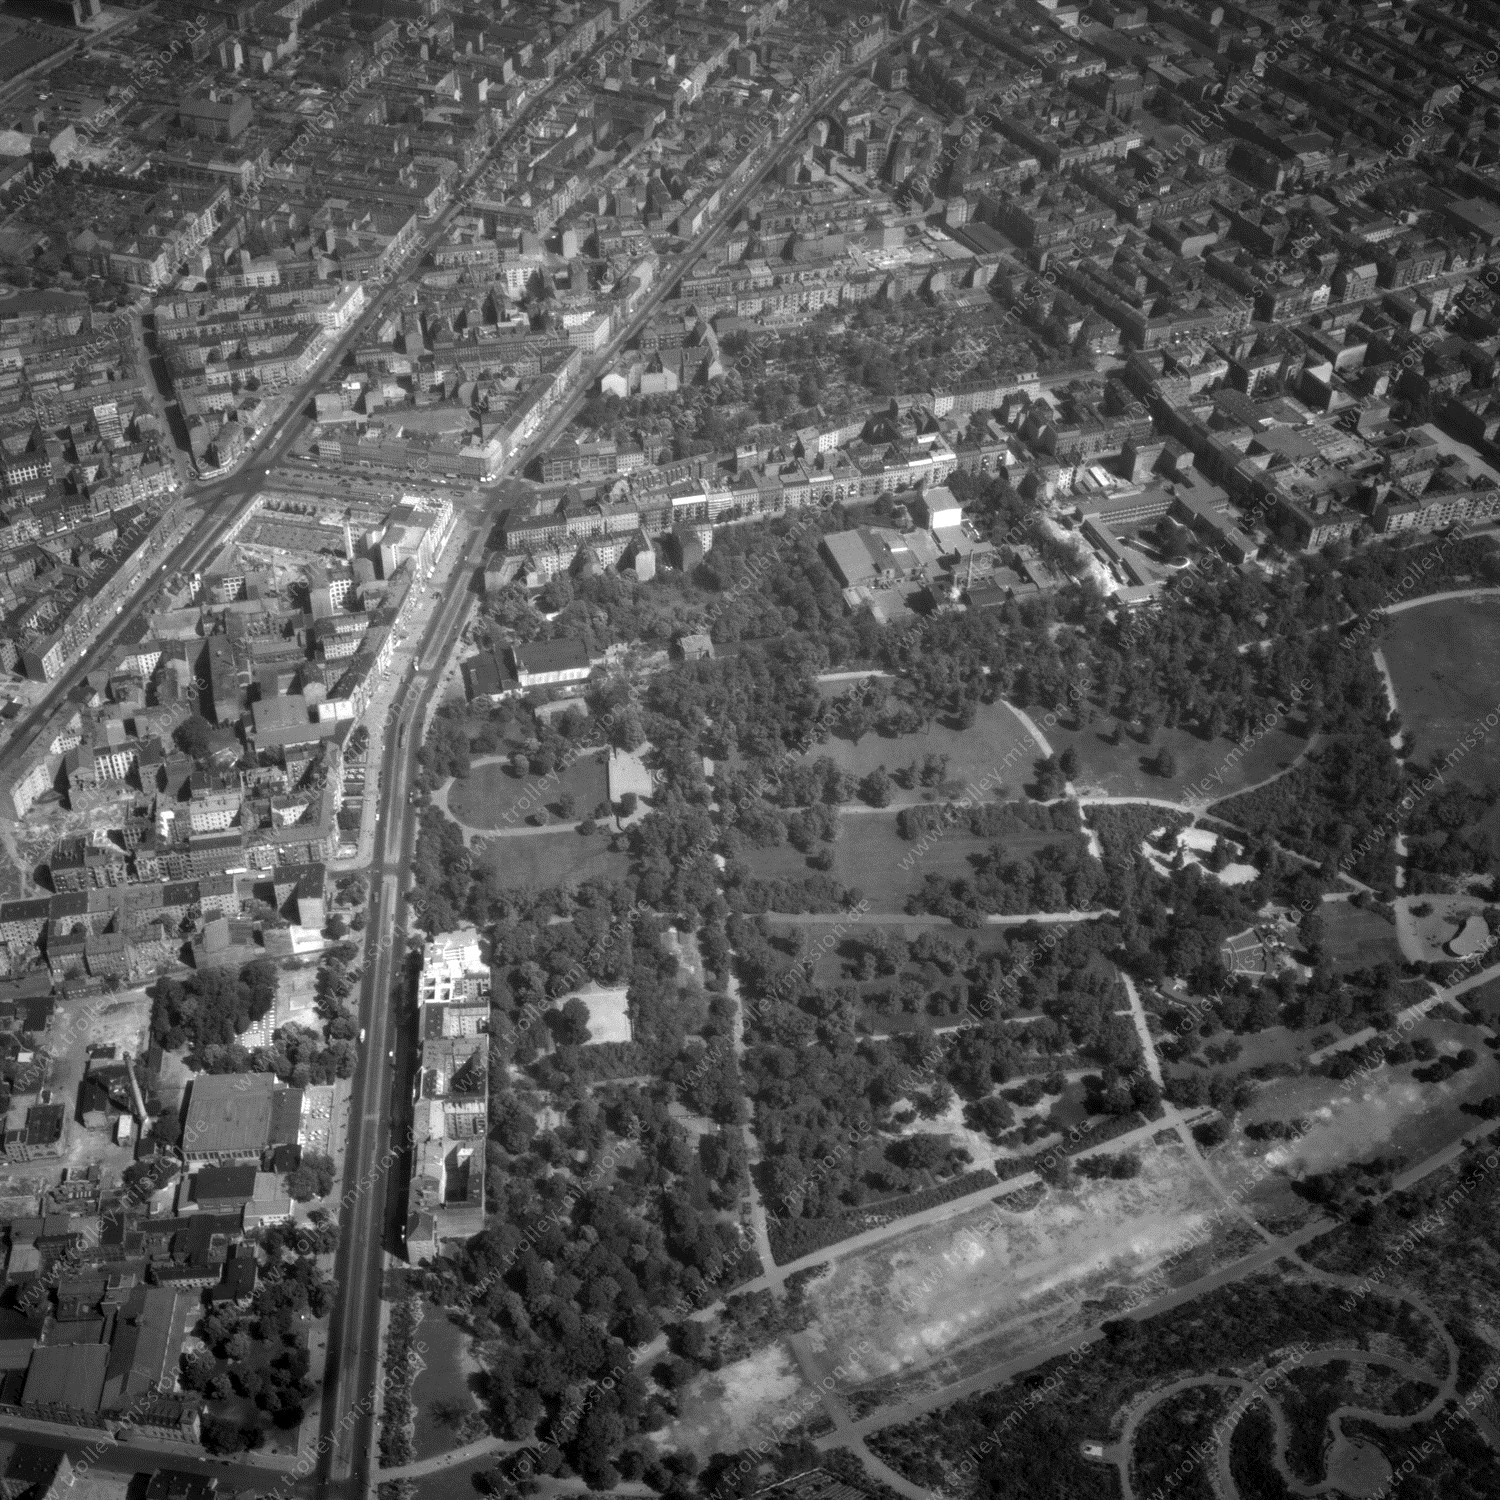 Alte Fotos und Luftbilder von Berlin - Luftbildaufnahme Nr. 01 - Historische Luftaufnahmen von West-Berlin aus dem Jahr 1954 - Flugstrecke Lima